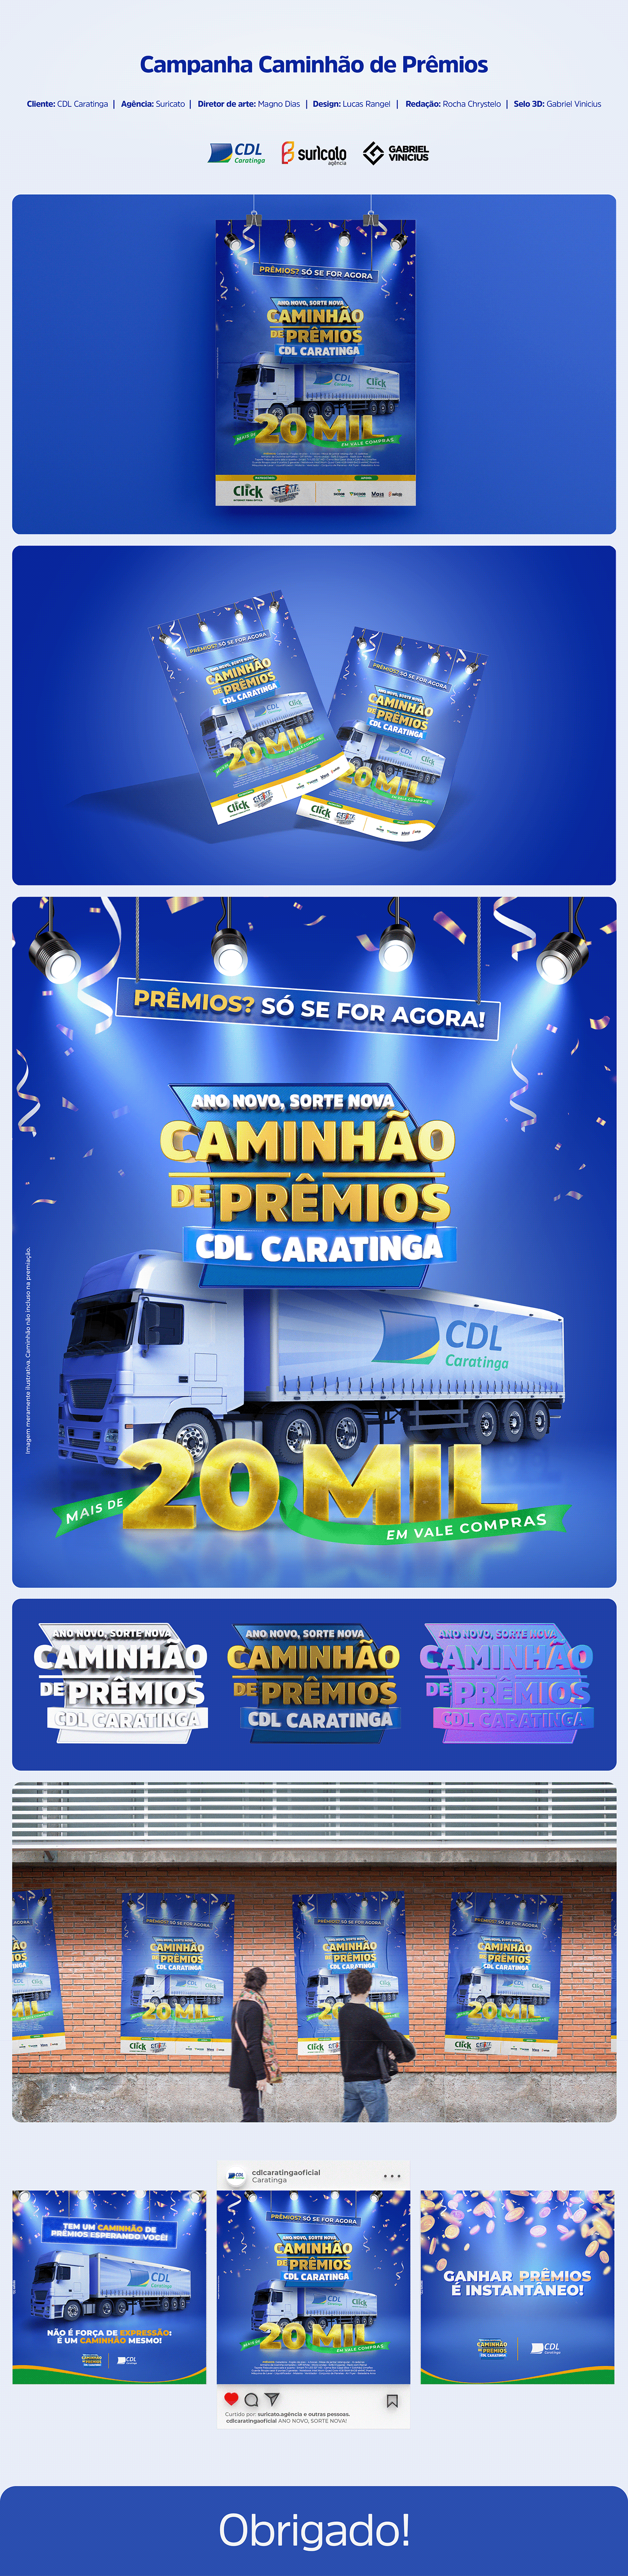 caminhão de prêmios campanha cdl cinema 4d design gráfico Direção de arte publicidade Redes Sociais selo 3d suricato